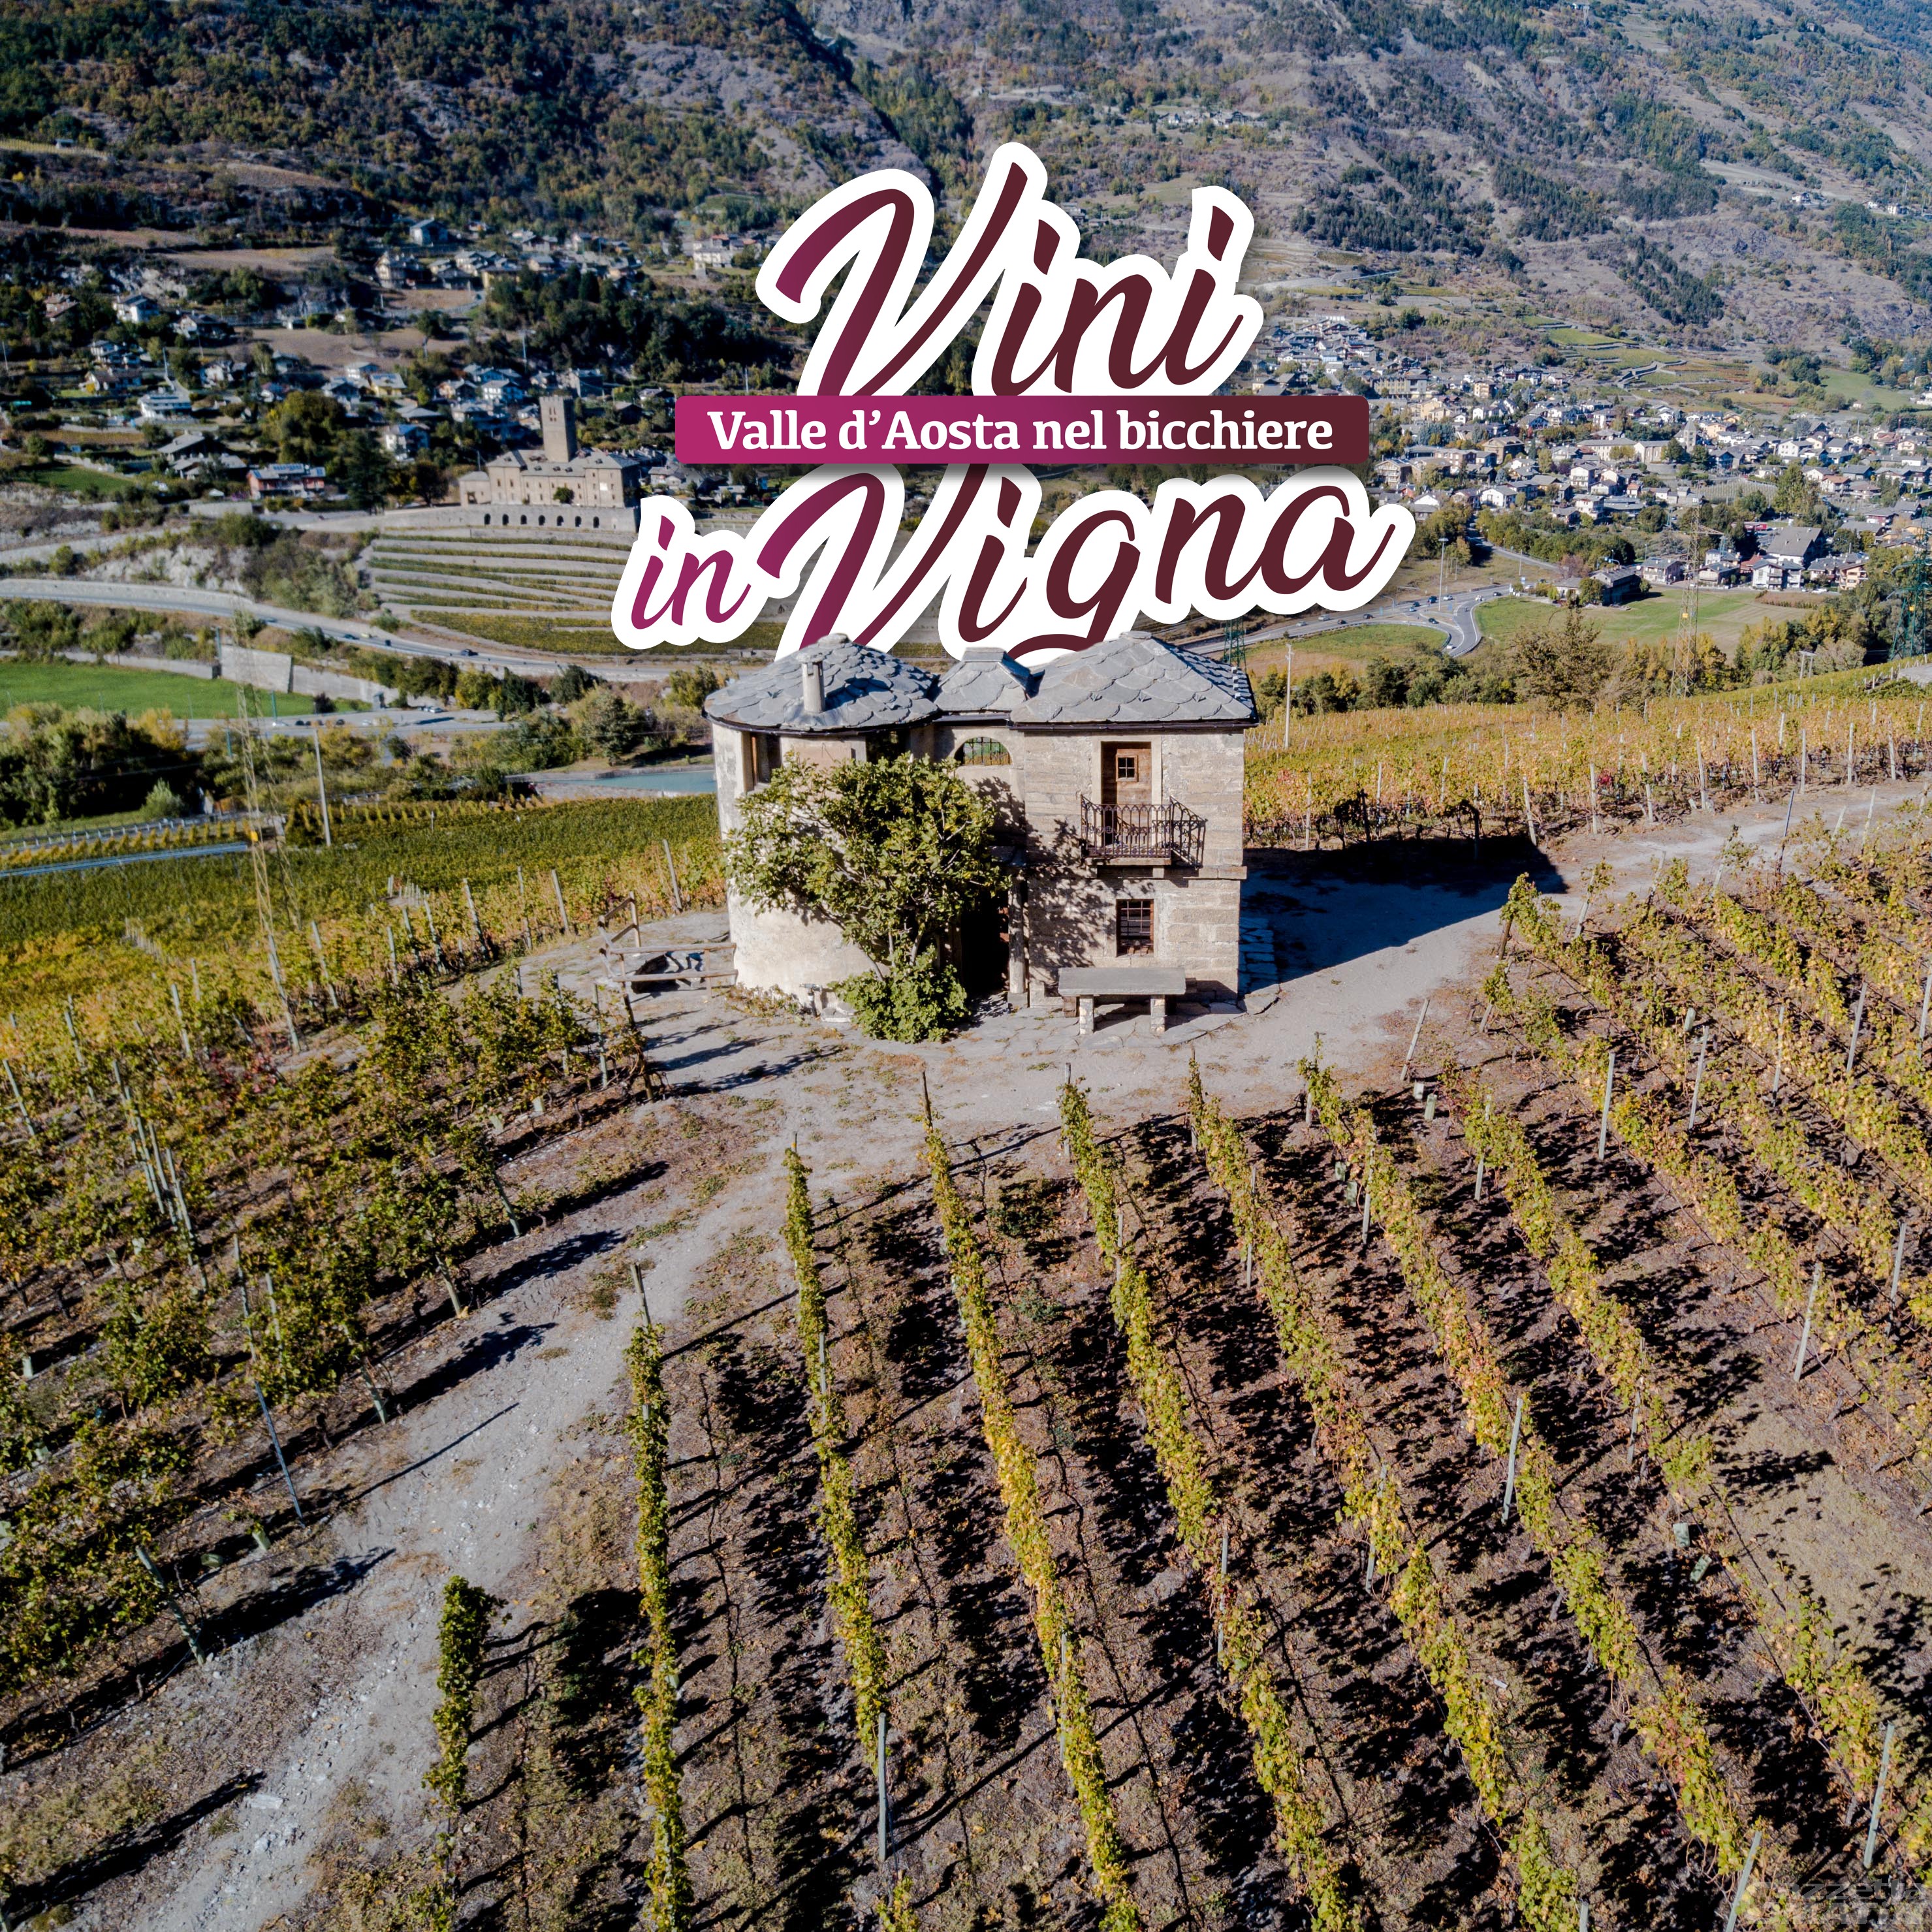 Vini in Vigna: appuntamento per l’estate valdostana con il Consorzio Vini Valle d’Aosta